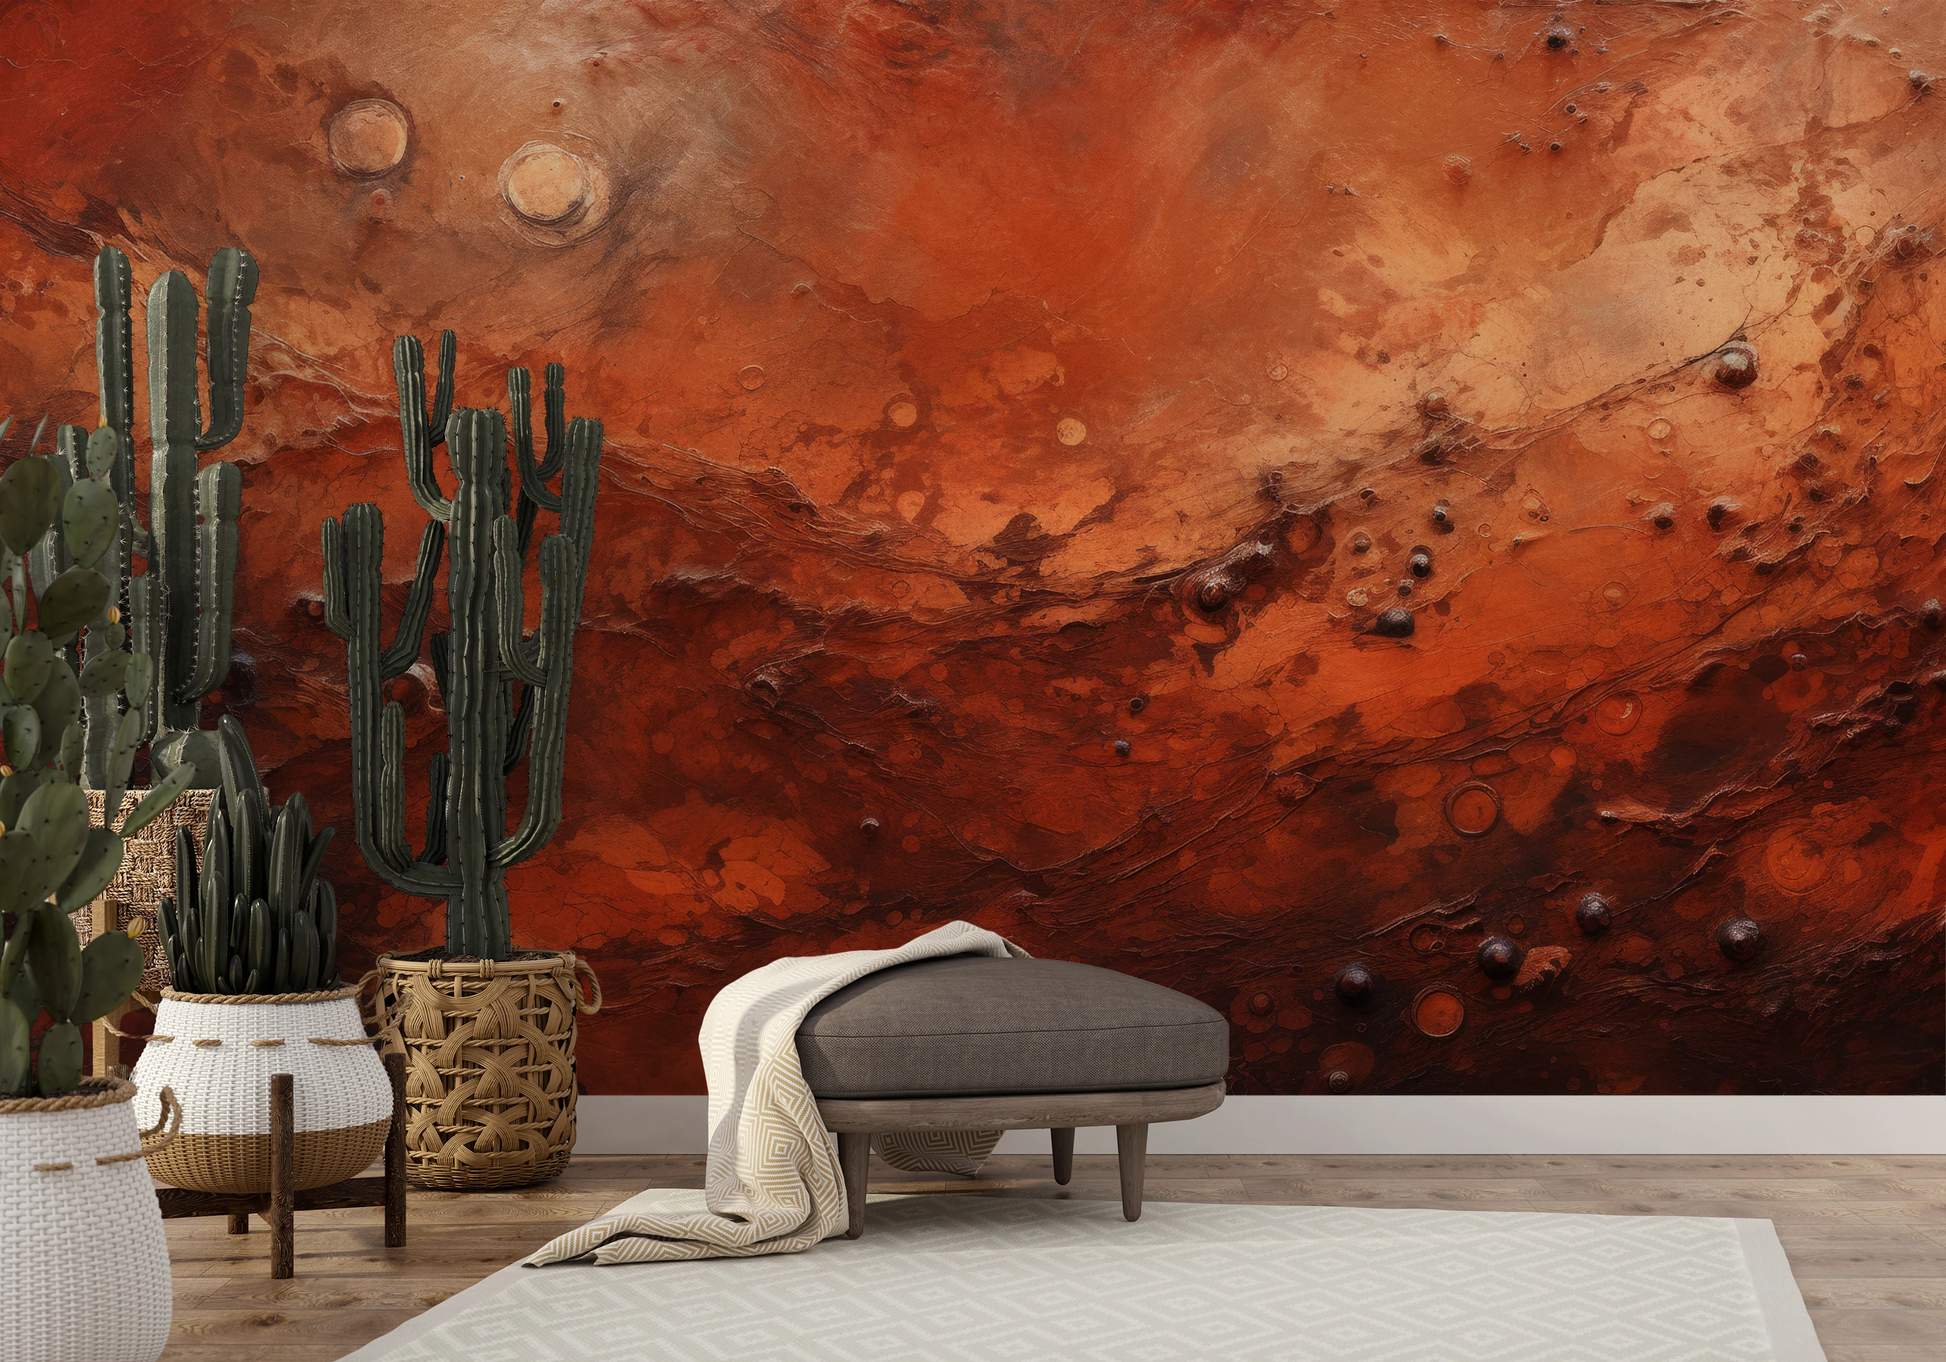 Fototapeta artystyczna o nazwie Martian Dust pokazana w aranżacji wnętrza.